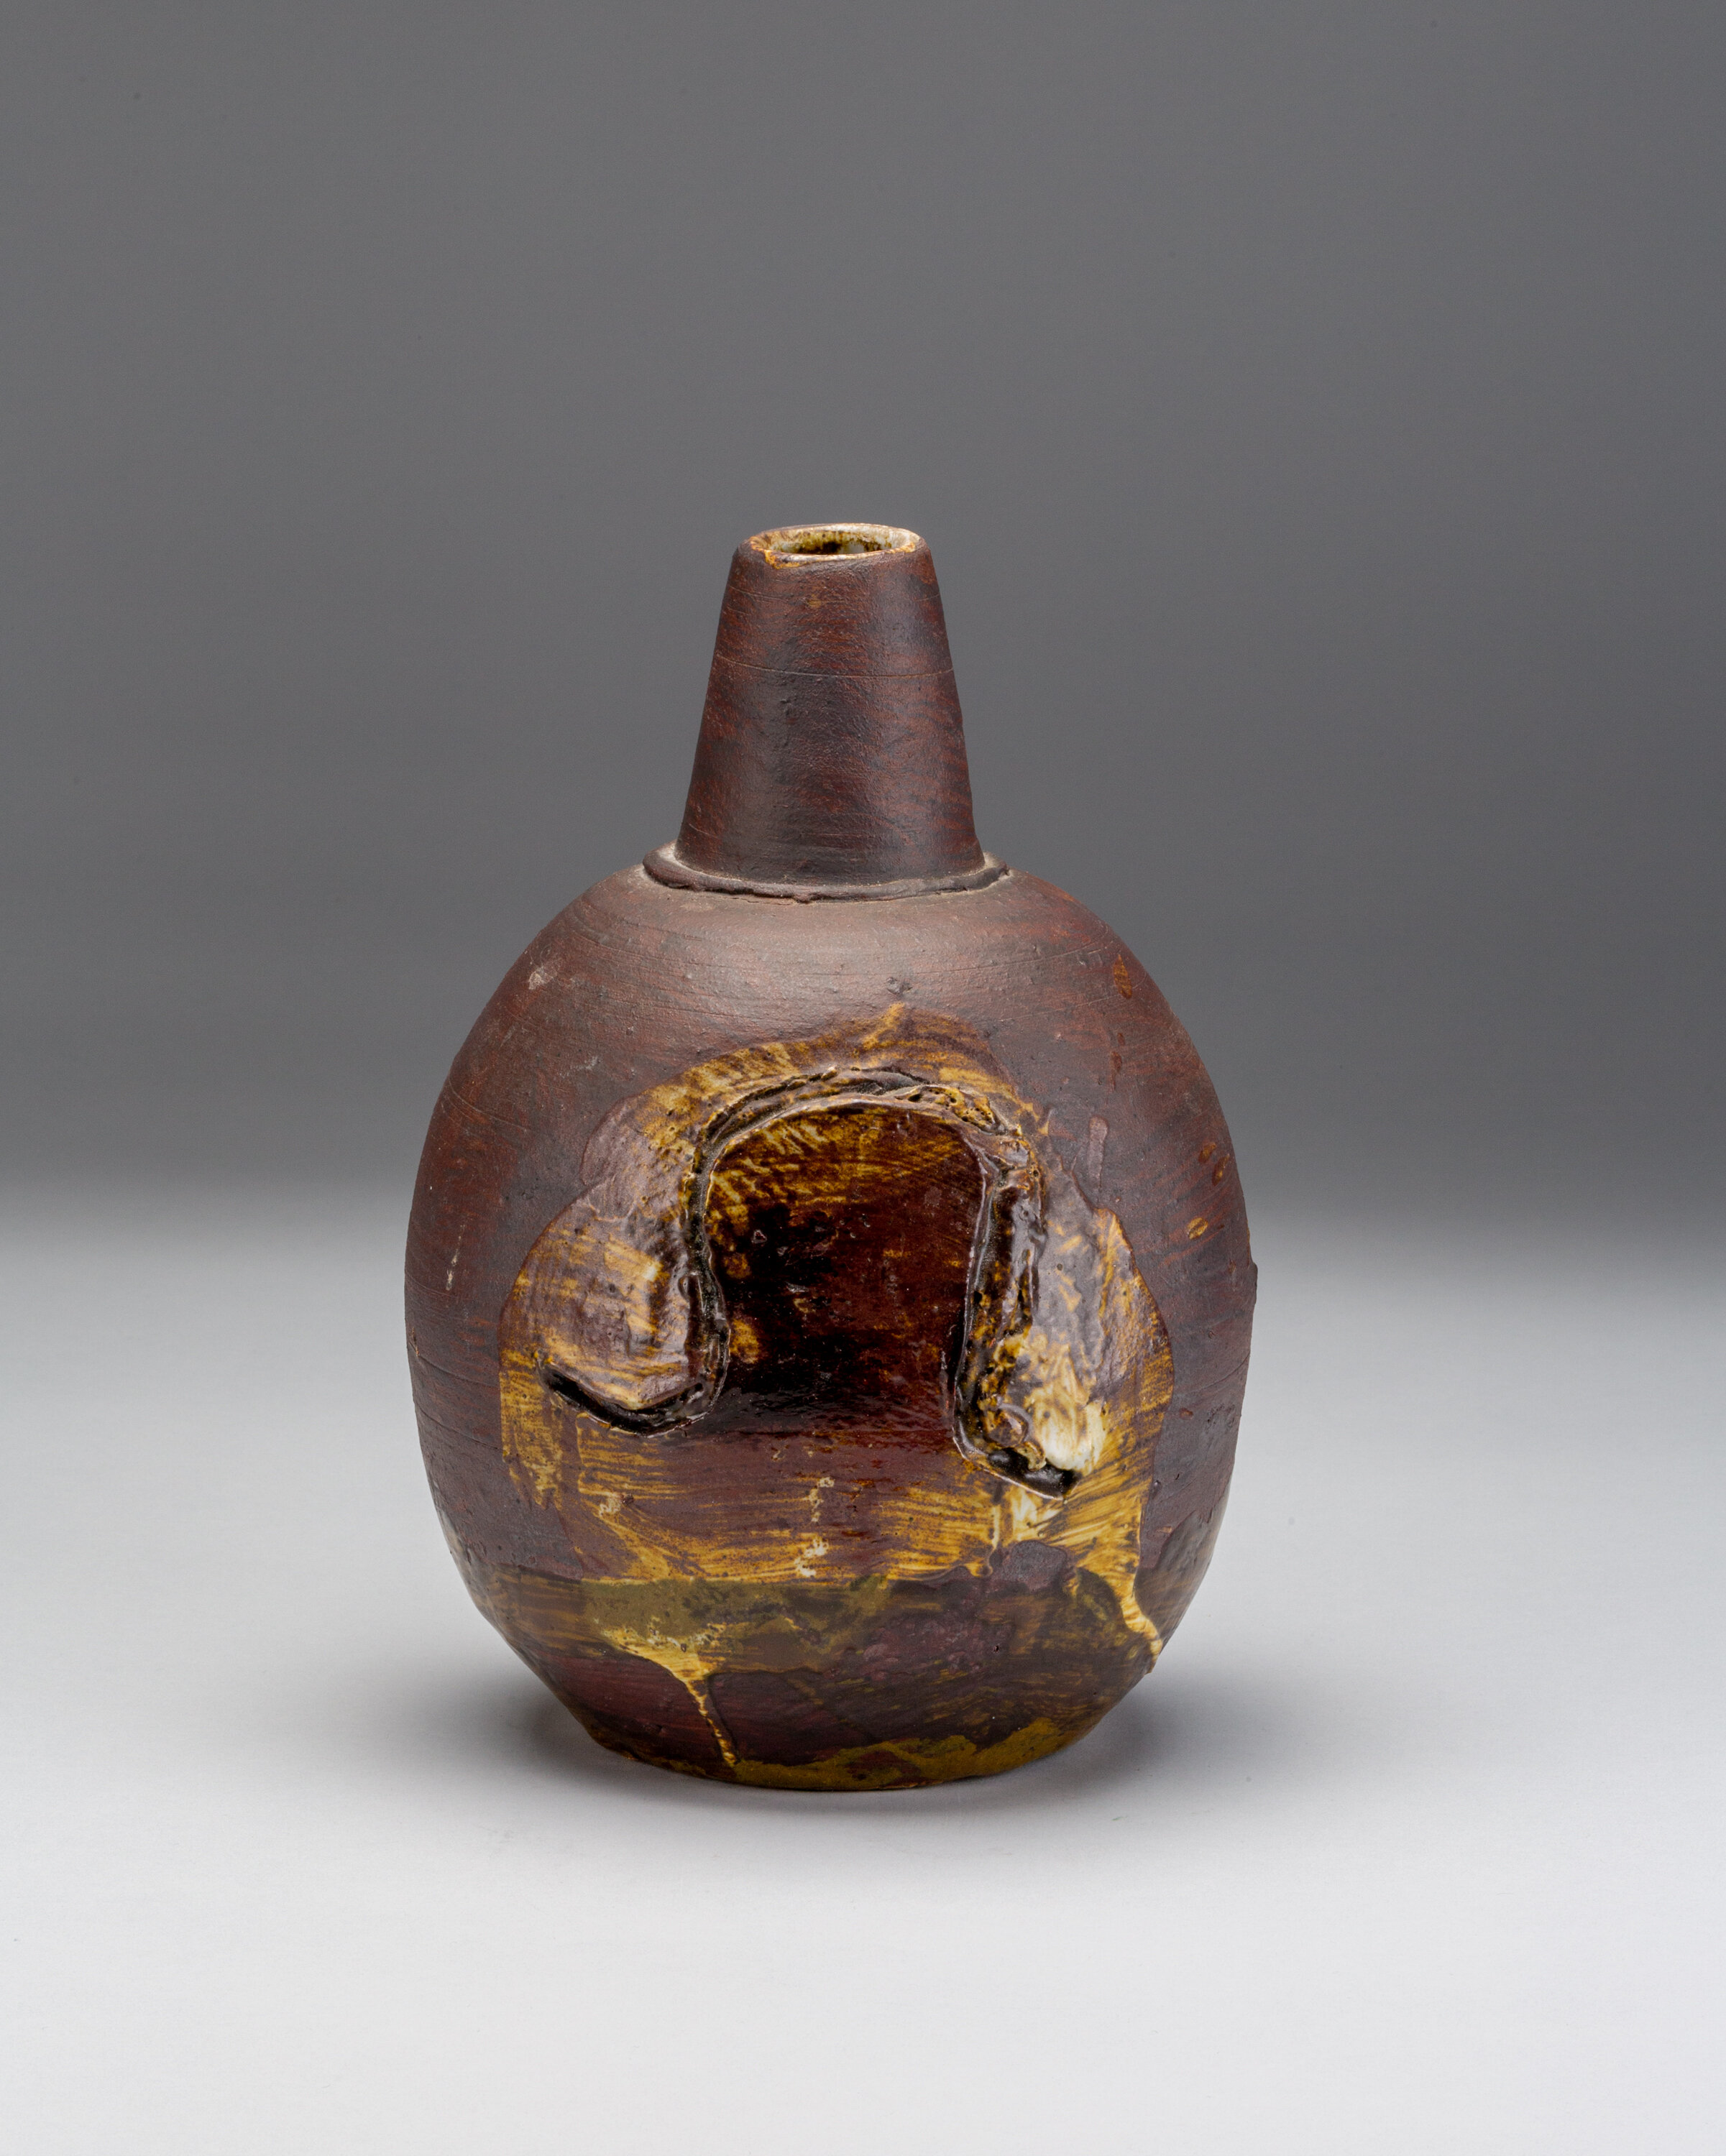  Peter Voulkos (American, 1924–2002), Chimney Pot, 1964, glazed stoneware; Promised Gift of E. John Bullard 